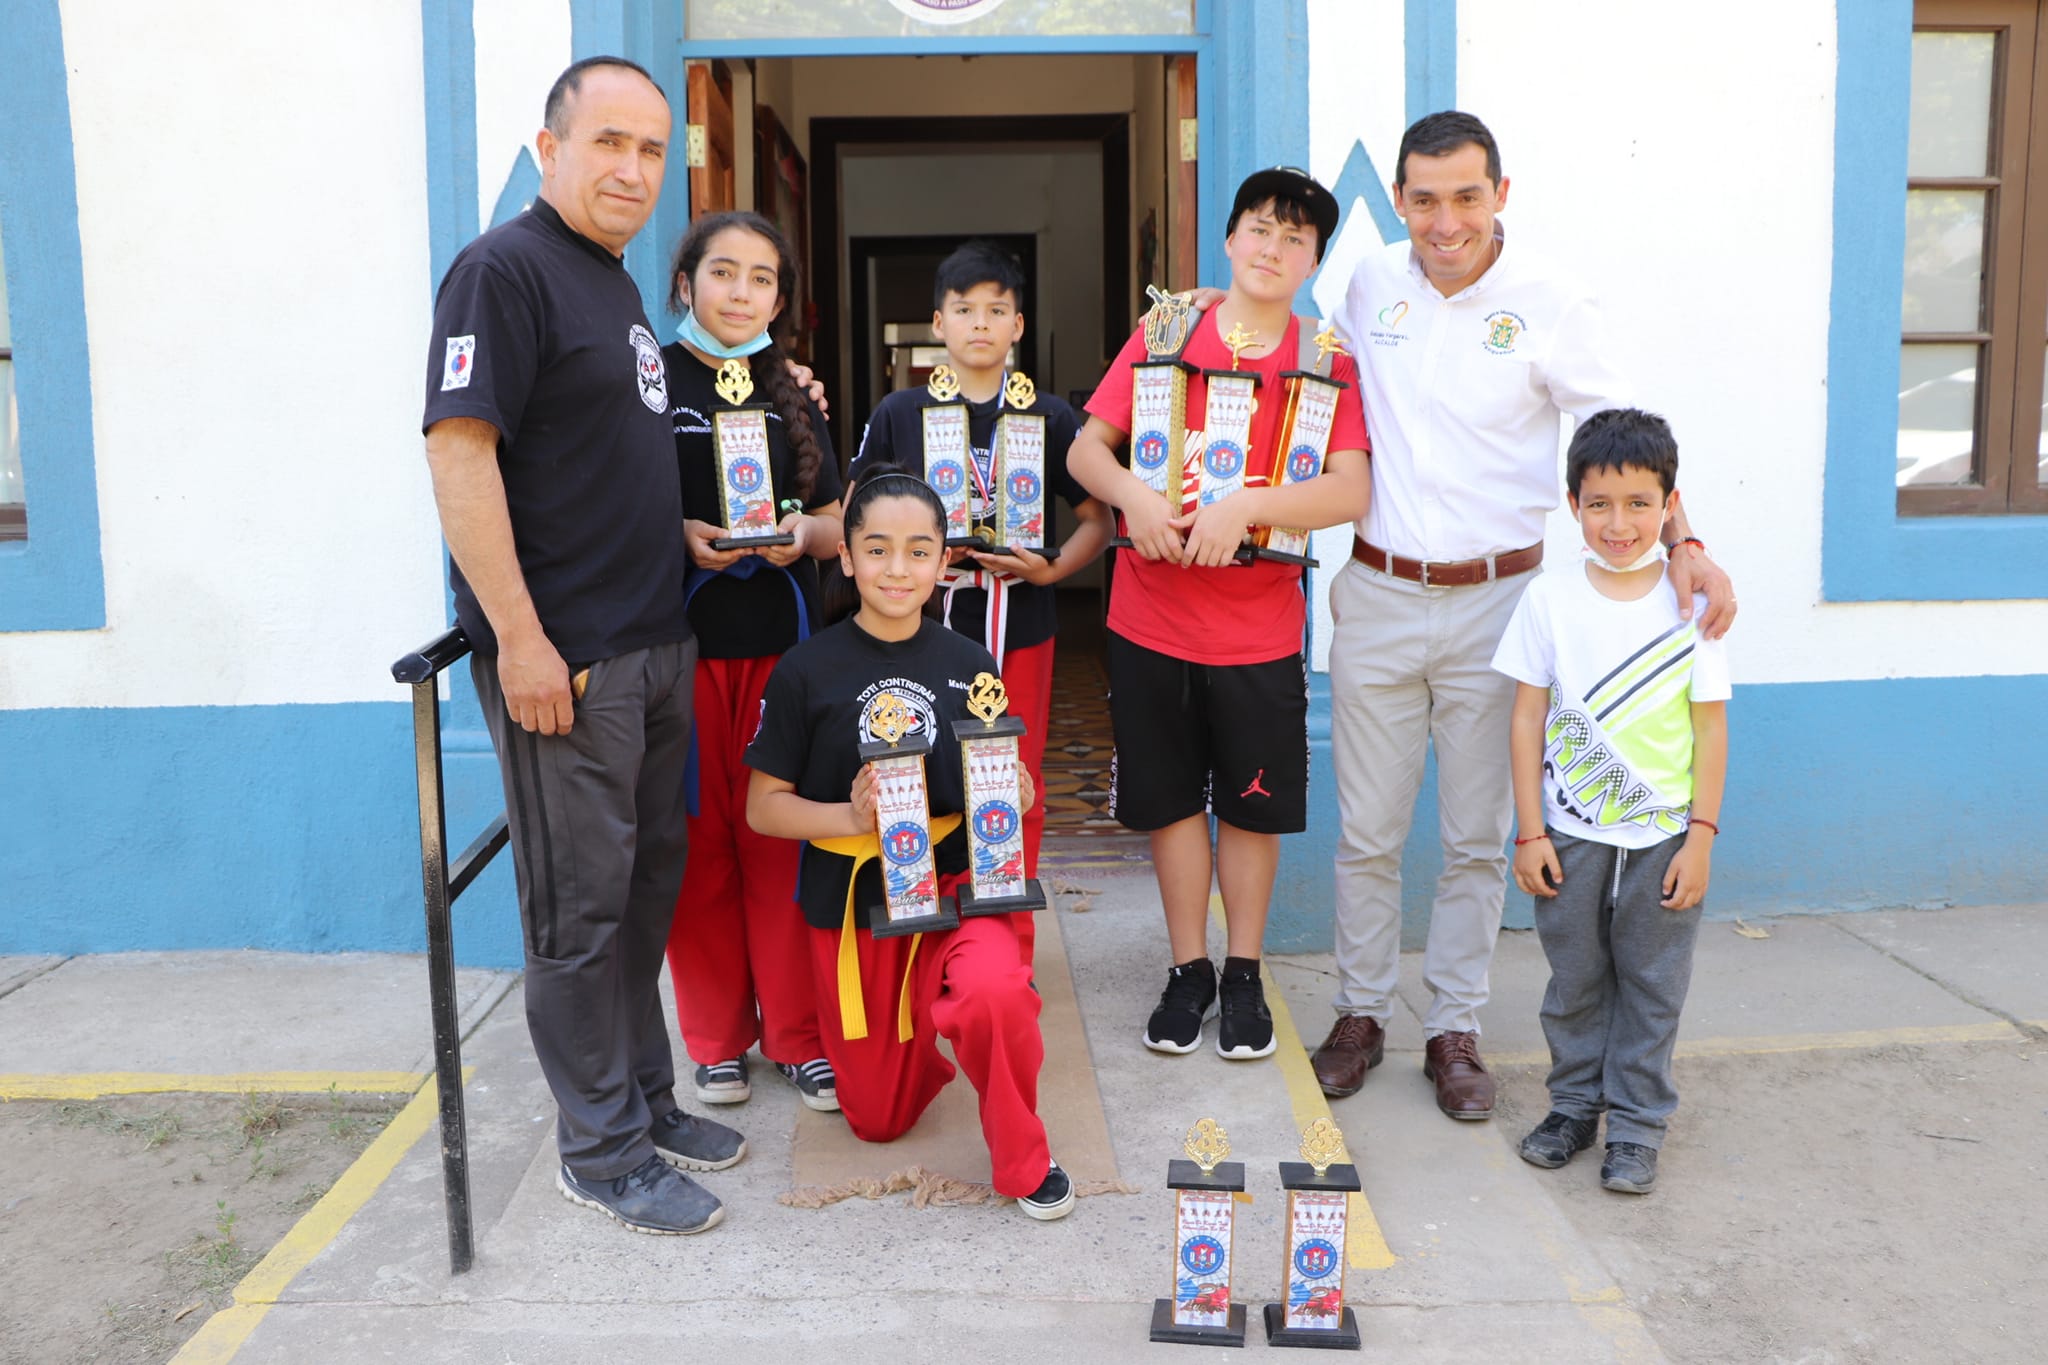 PANQUEHUE: Escuela de Karate Pianan agradeció apoyo del alcalde Gonzalo Vergara tras gran actuación en San Clemente